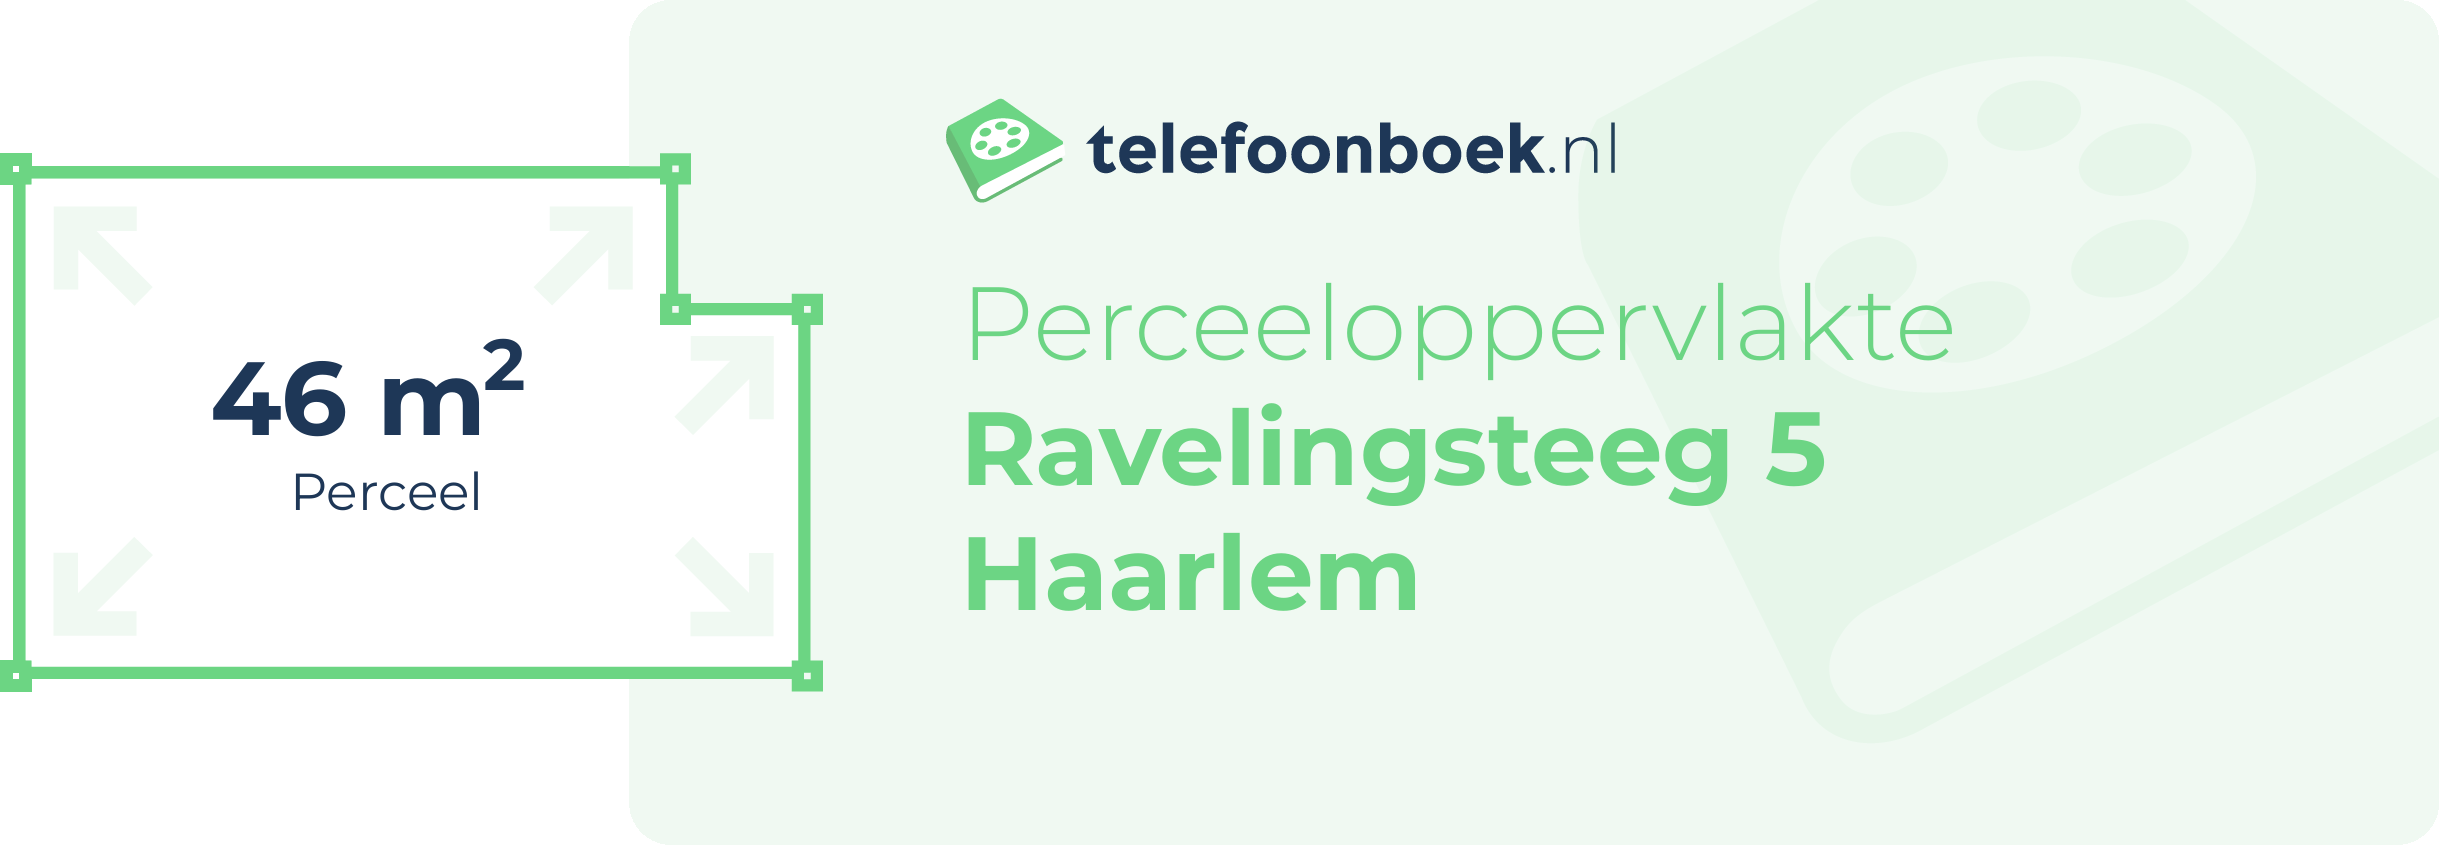 Perceeloppervlakte Ravelingsteeg 5 Haarlem